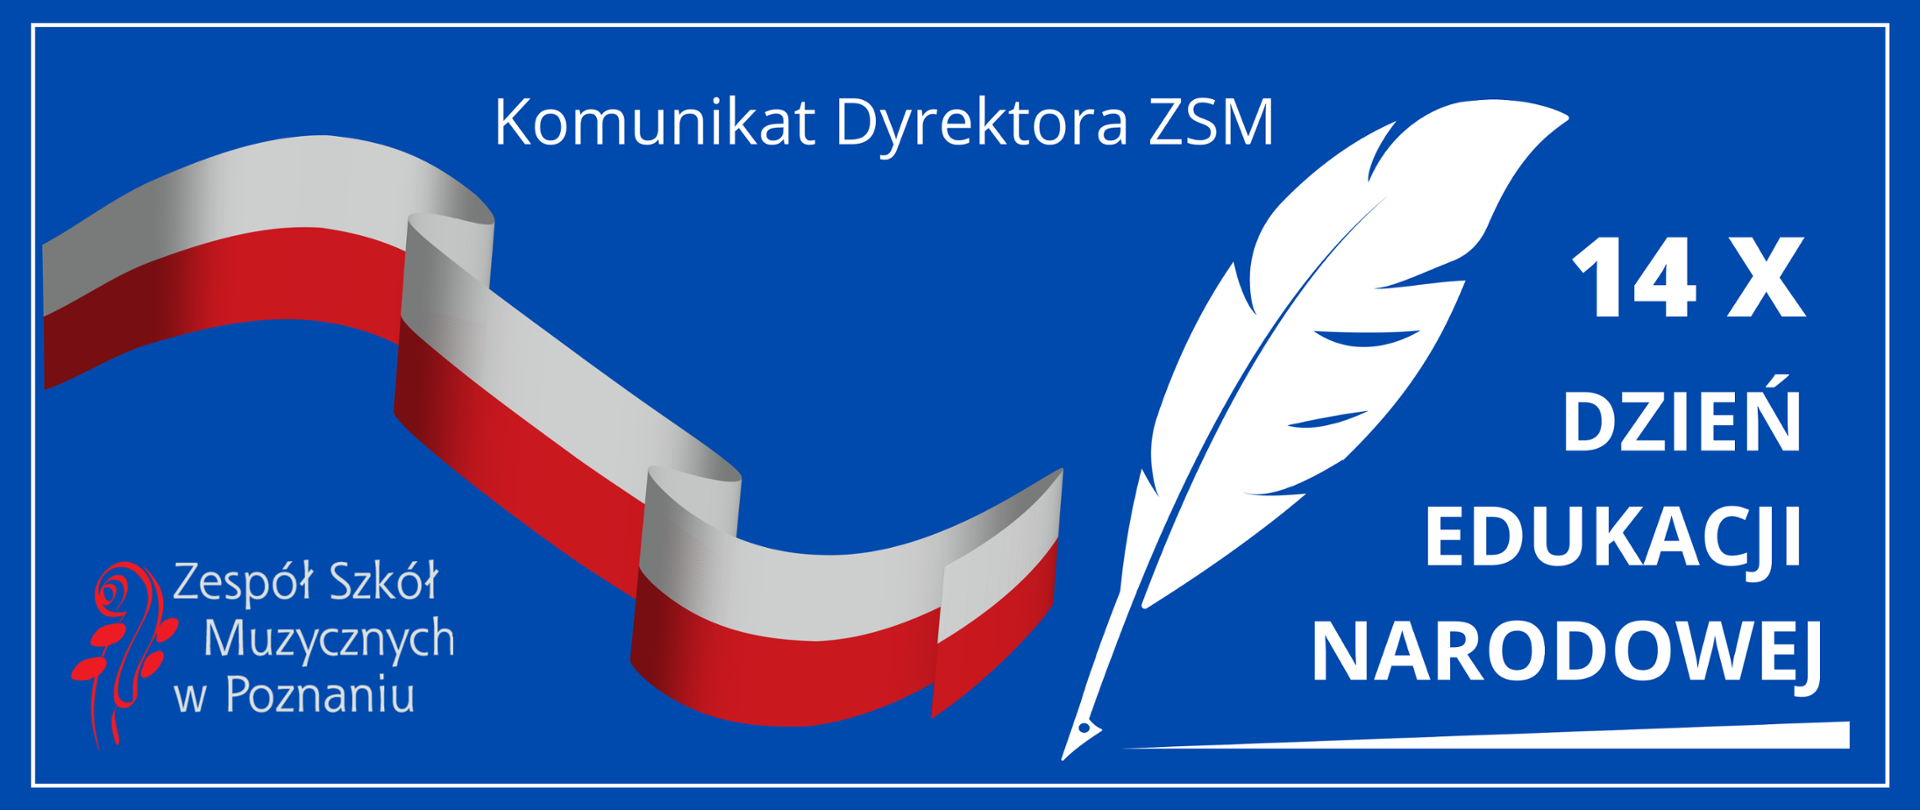 Niebieski baner z biało-czerwoną flagą, grafiką białego ptasiego pióra. U góry napis Komunikat Dyrektora ZSM. W lewym dolnym rogu logo ZSM. W prawym roku napis: 14X DZIEŃ EDUKACJI NARODOWEJ